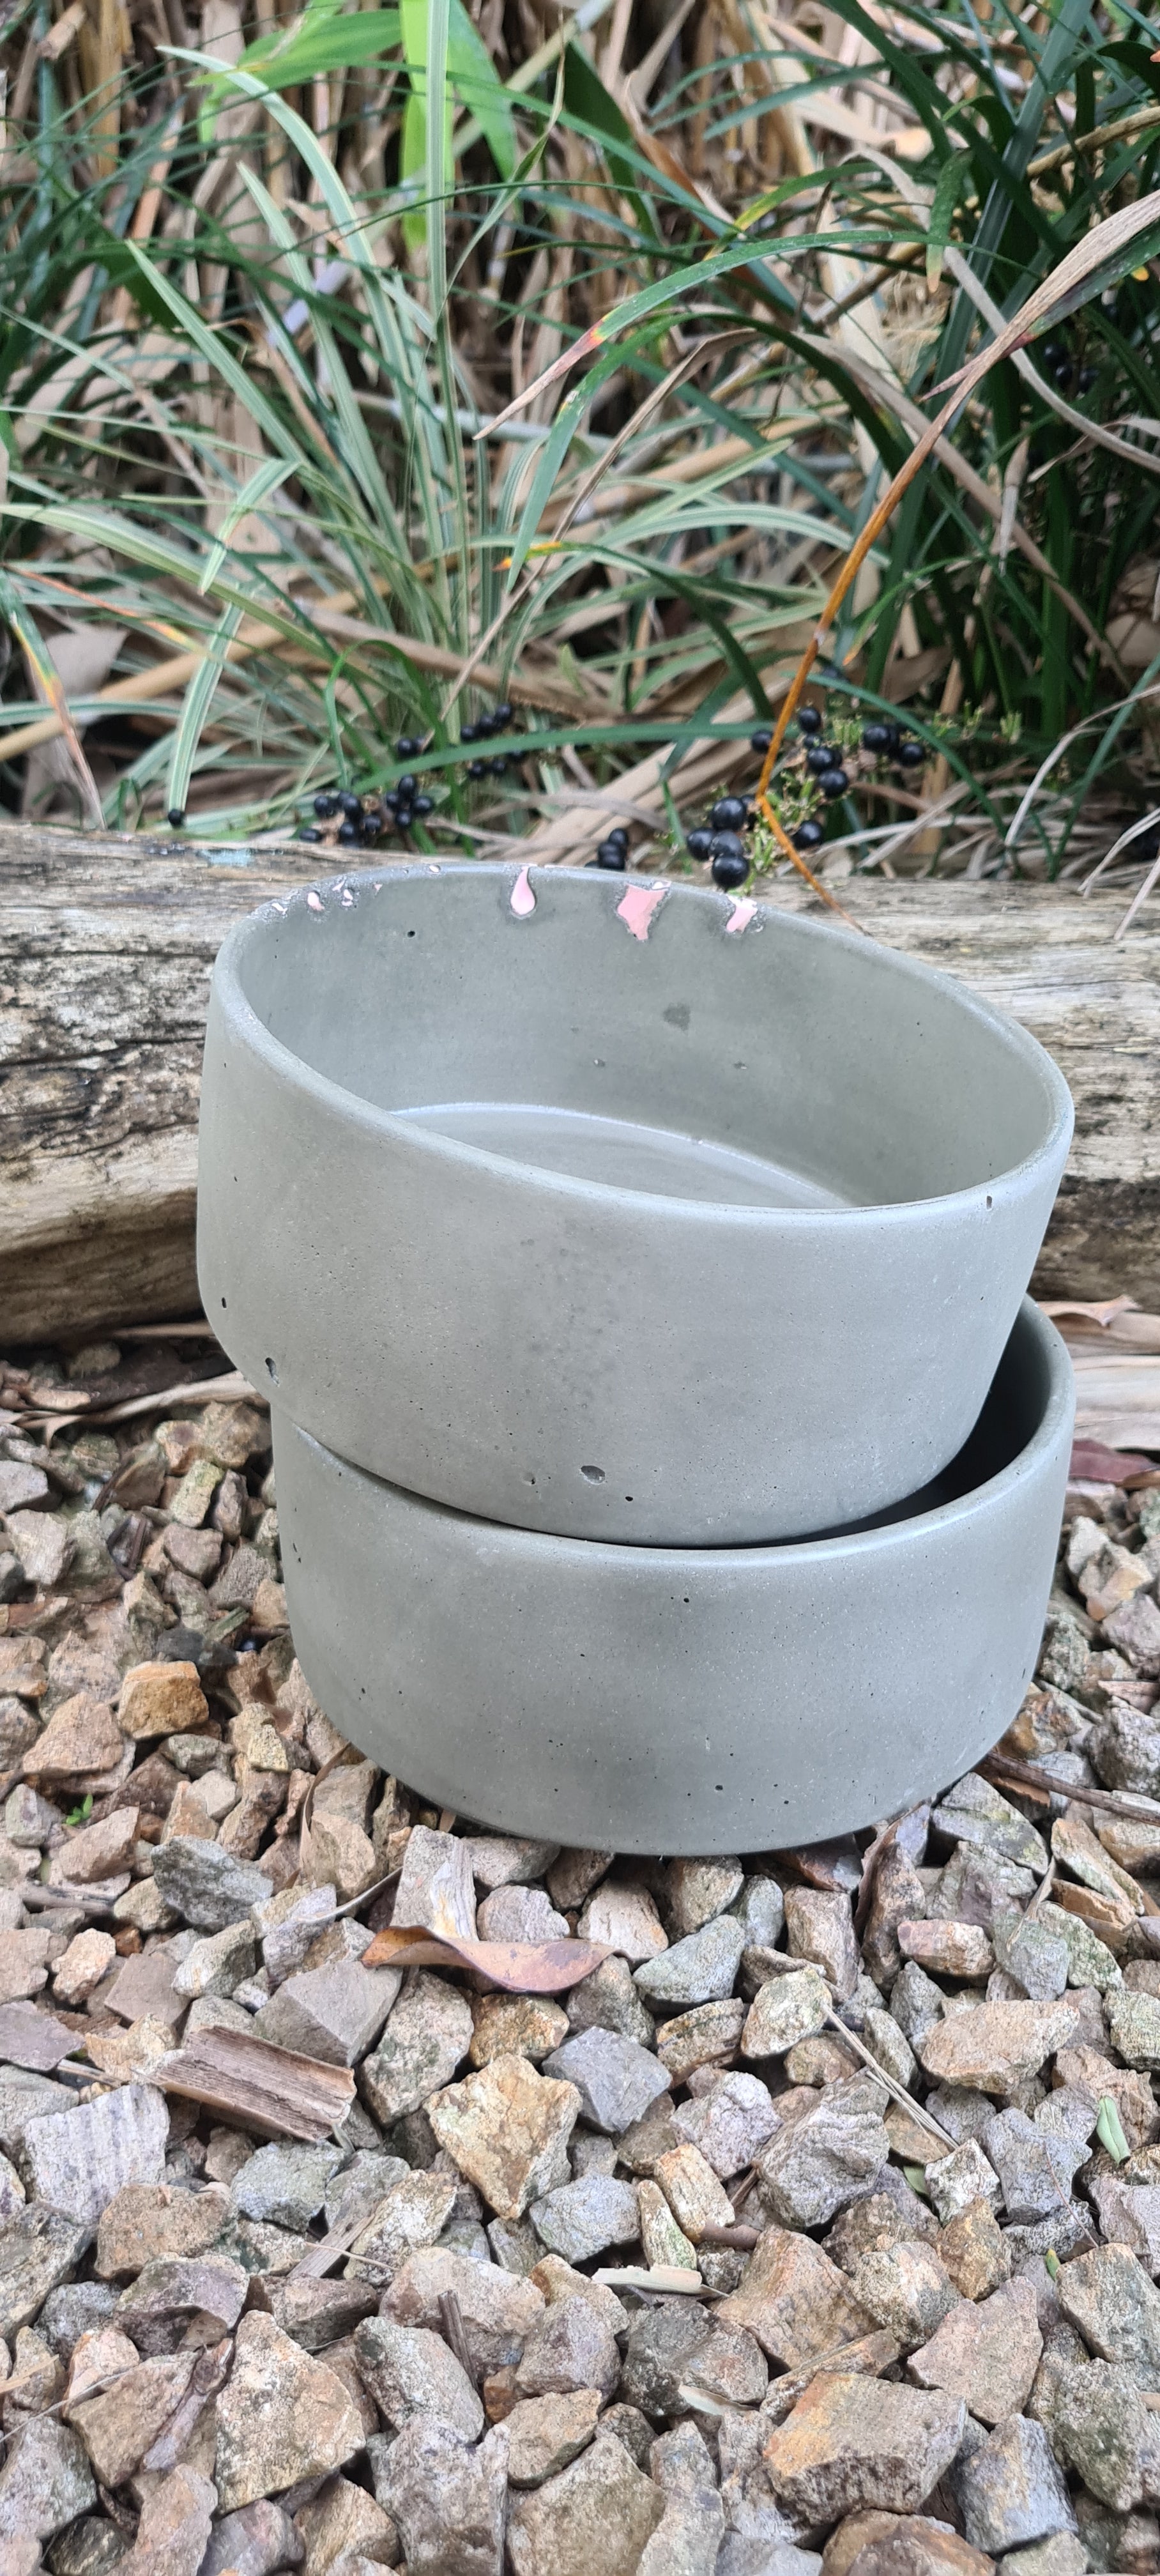 Concrete Pet Bowl